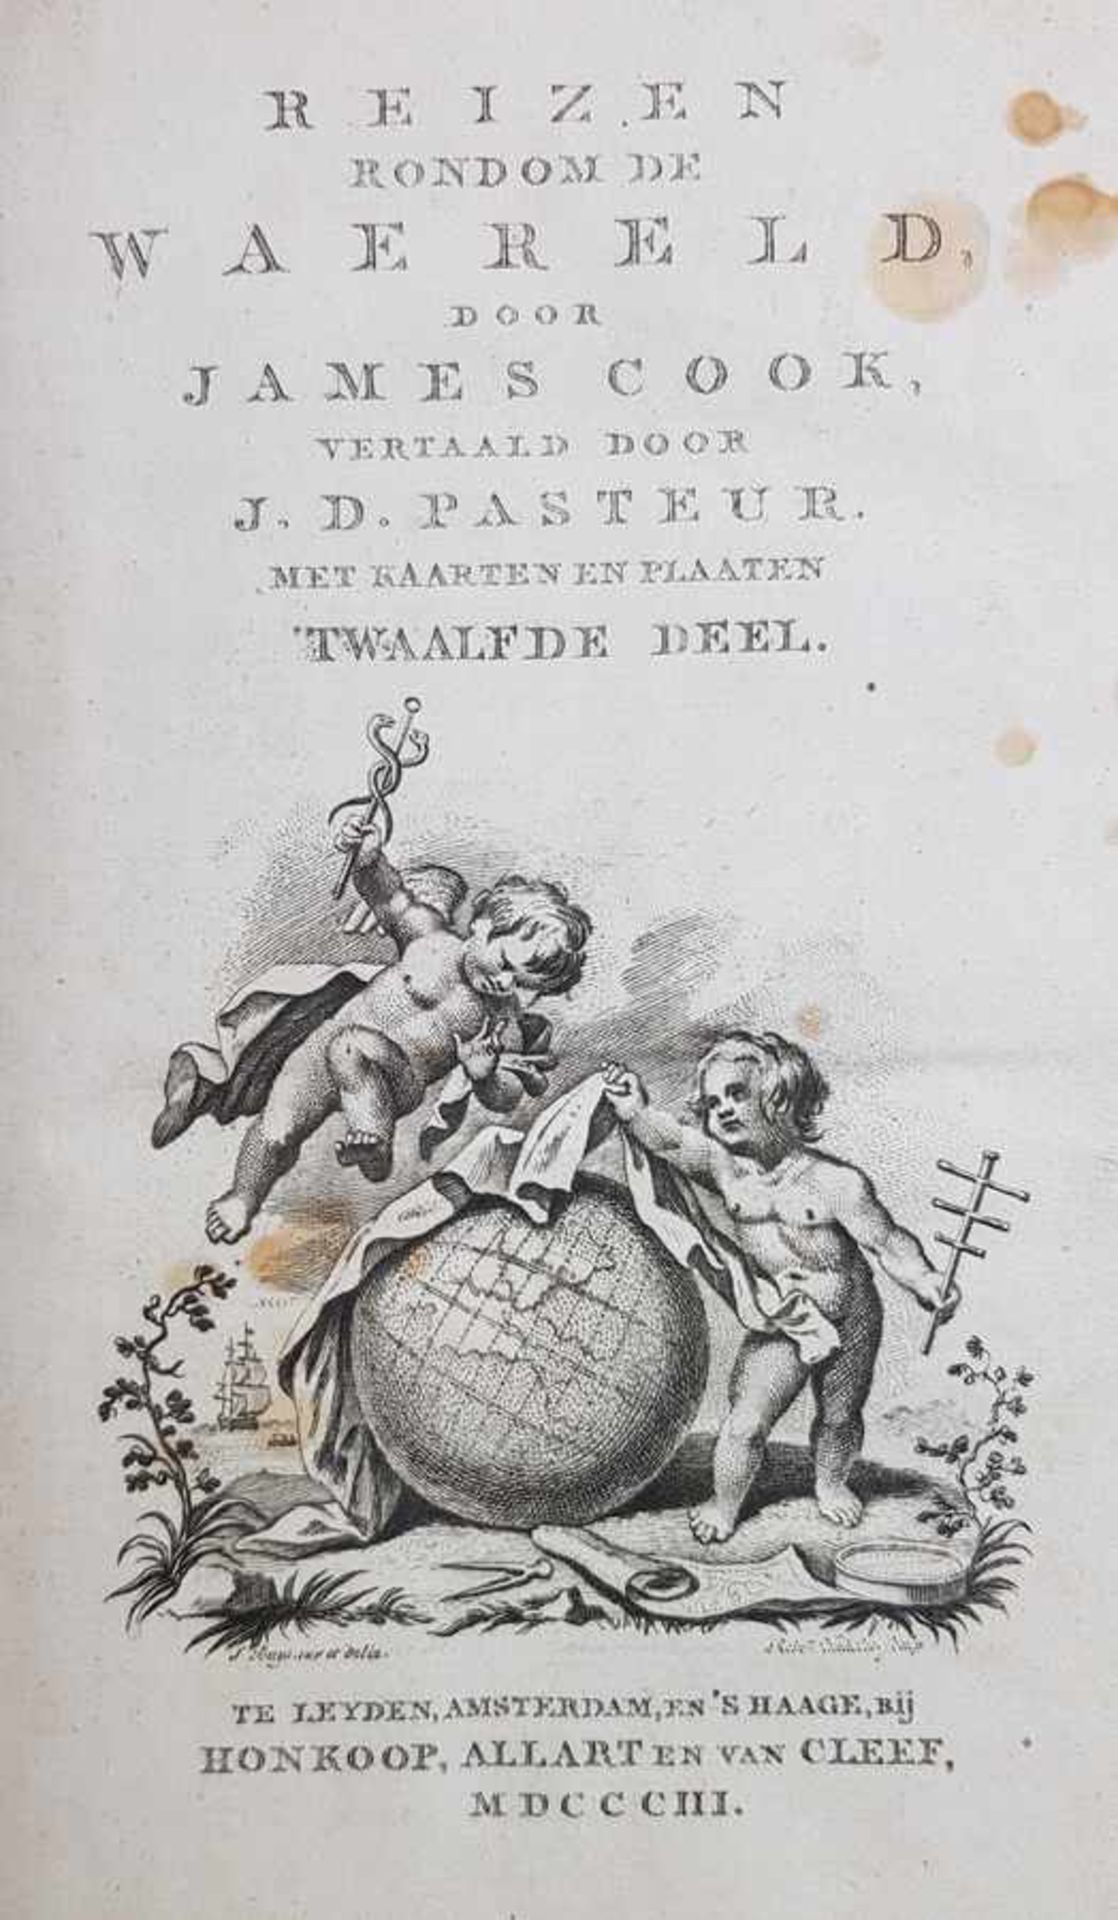 (Boeken) (Reisverhalen) James Cook - Reize naar den Stillen OceaanJames Cook, J. D. Pasteur ( - Bild 4 aus 6